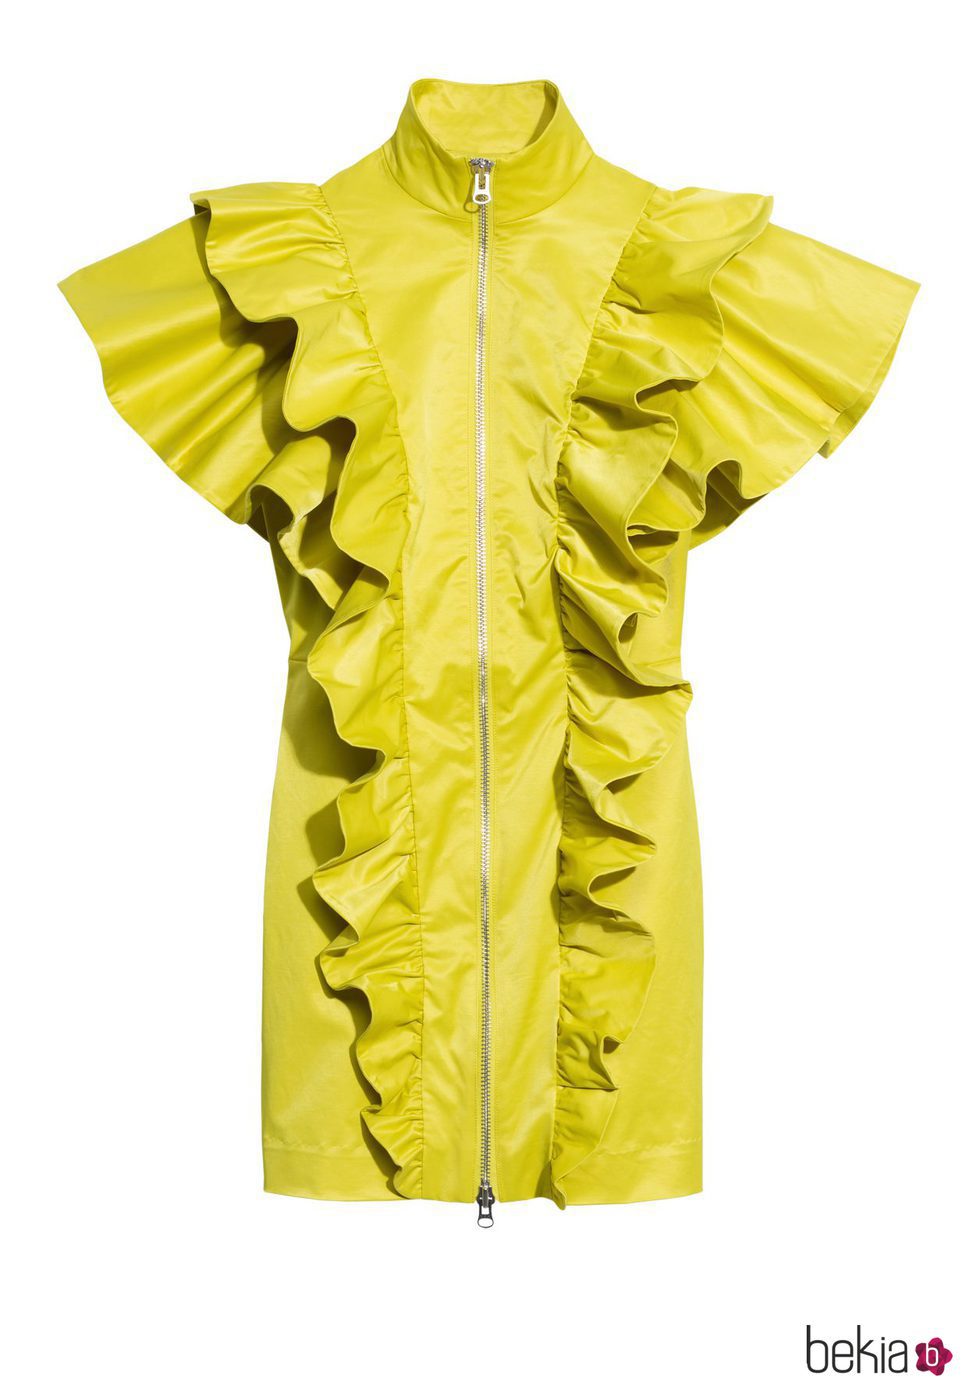 Vestido de piel amarillo de la nueva colección & Other Stories otoño/invierno 2017/2018